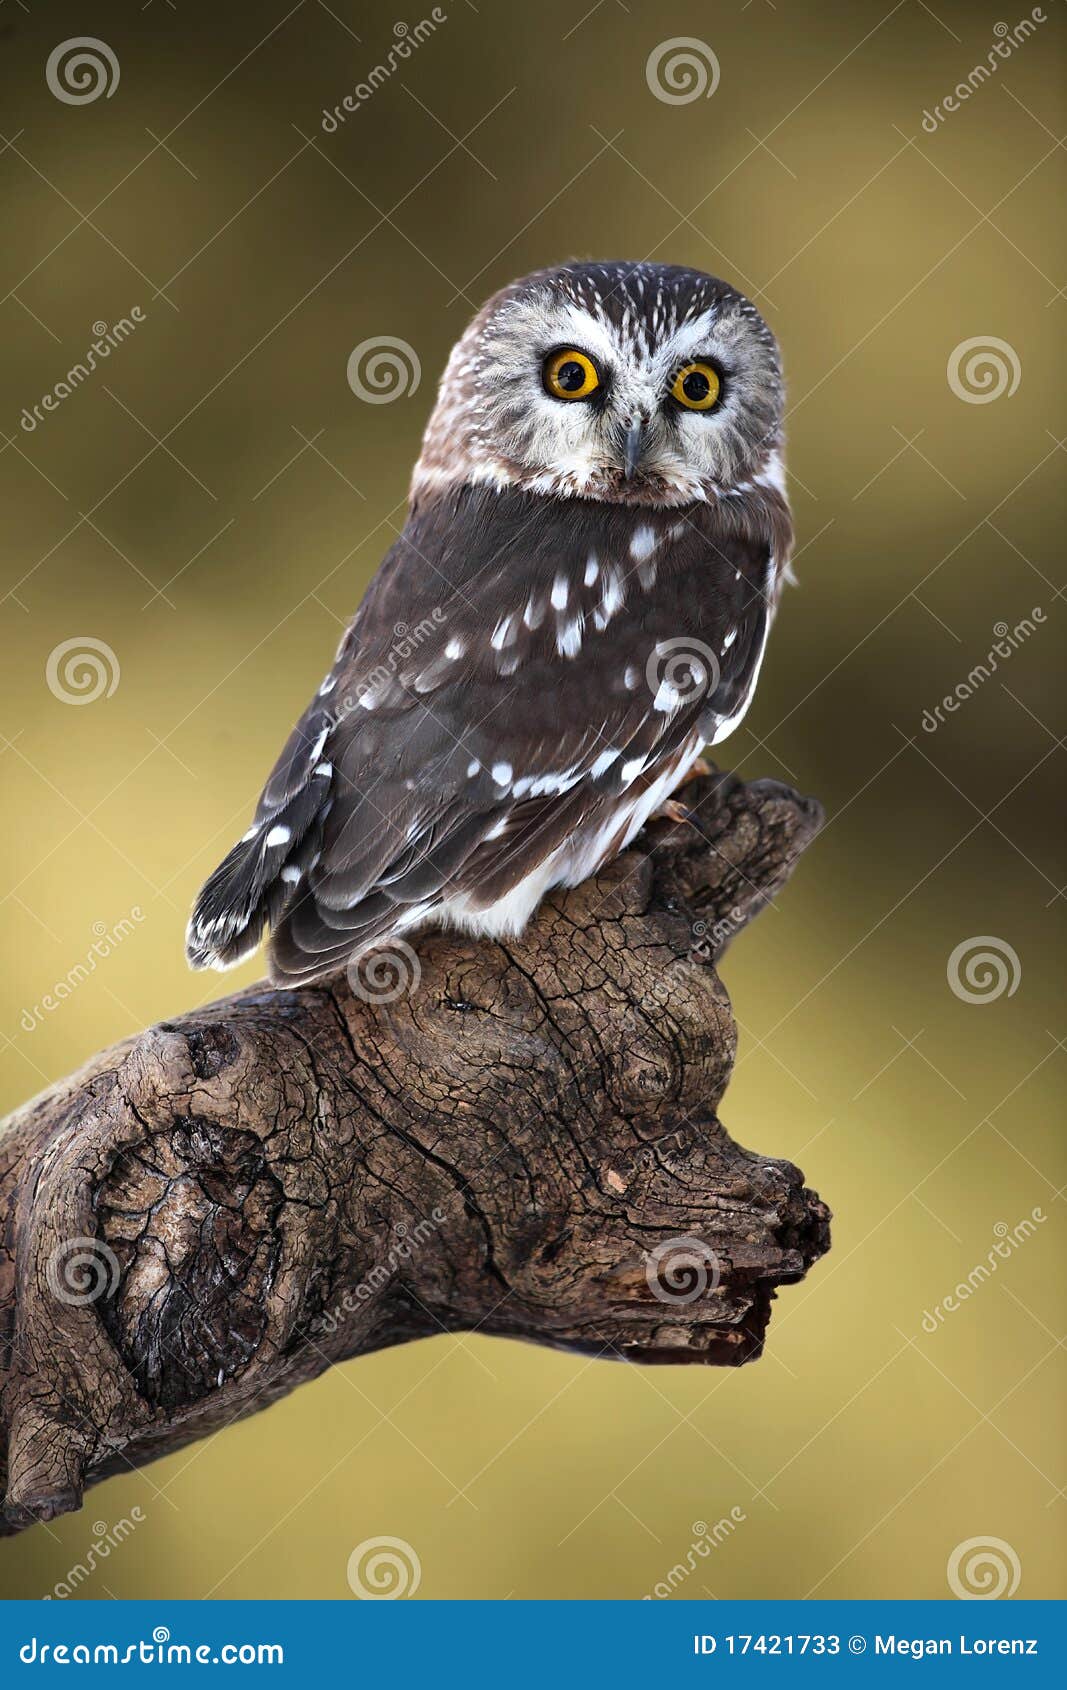 saw-whet owl